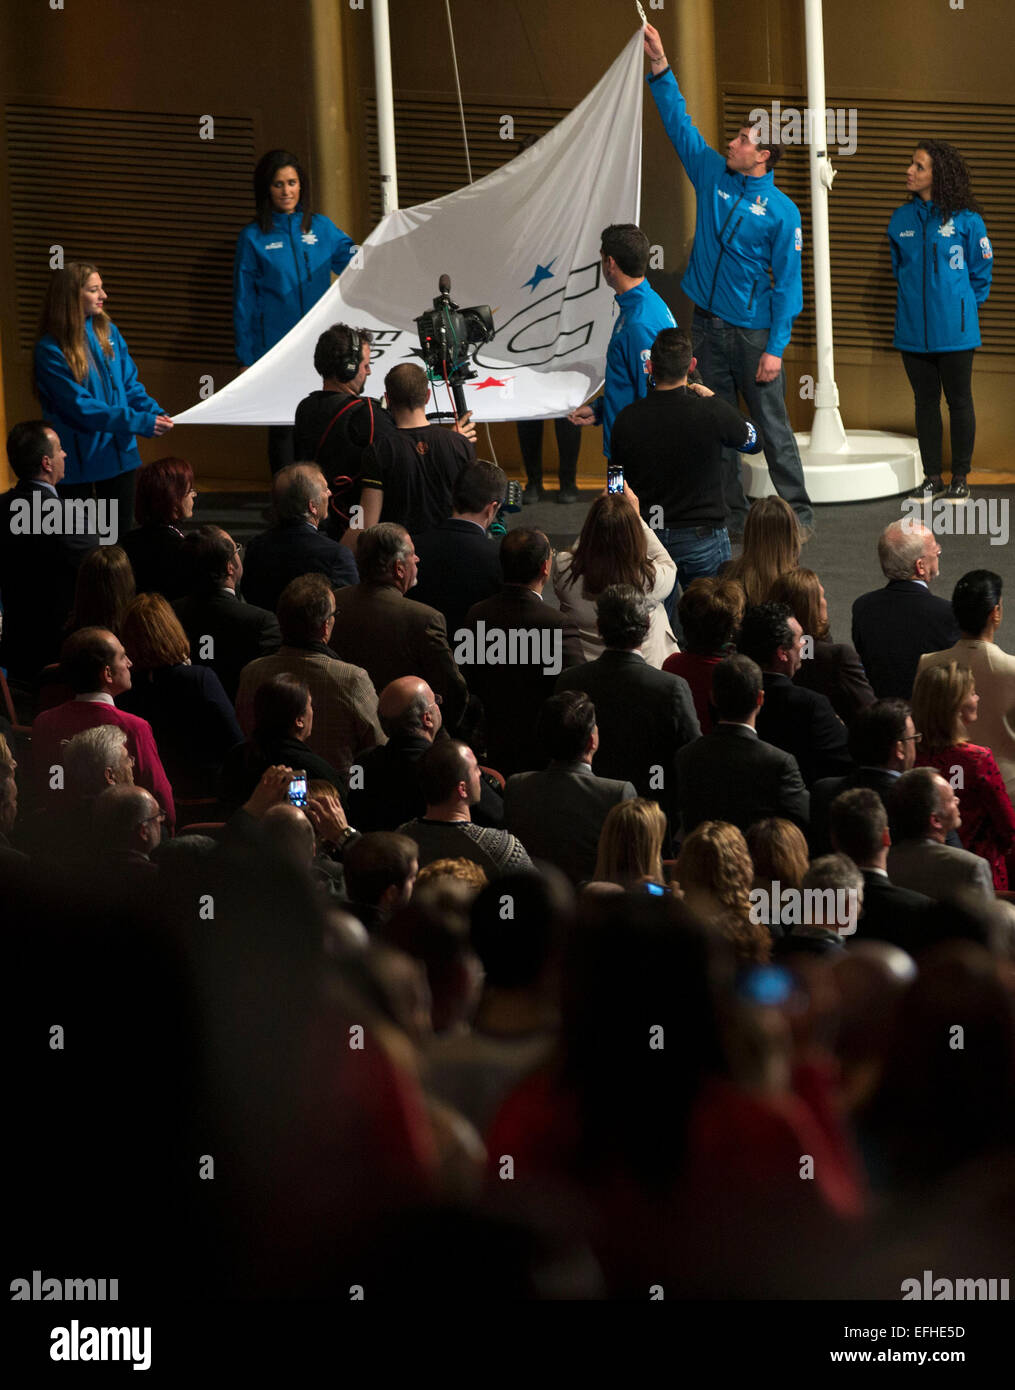 Granada, Espagne. 4e Février, 2015. La Fédération Internationale du Sport Universitaire drapeau est hissé lors de la cérémonie d'ouverture de la 27e Universiade d'hiver à Grenade, Espagne, le 4 février 2015. © Fei Maohua/Xinhua/Alamy Live News Banque D'Images